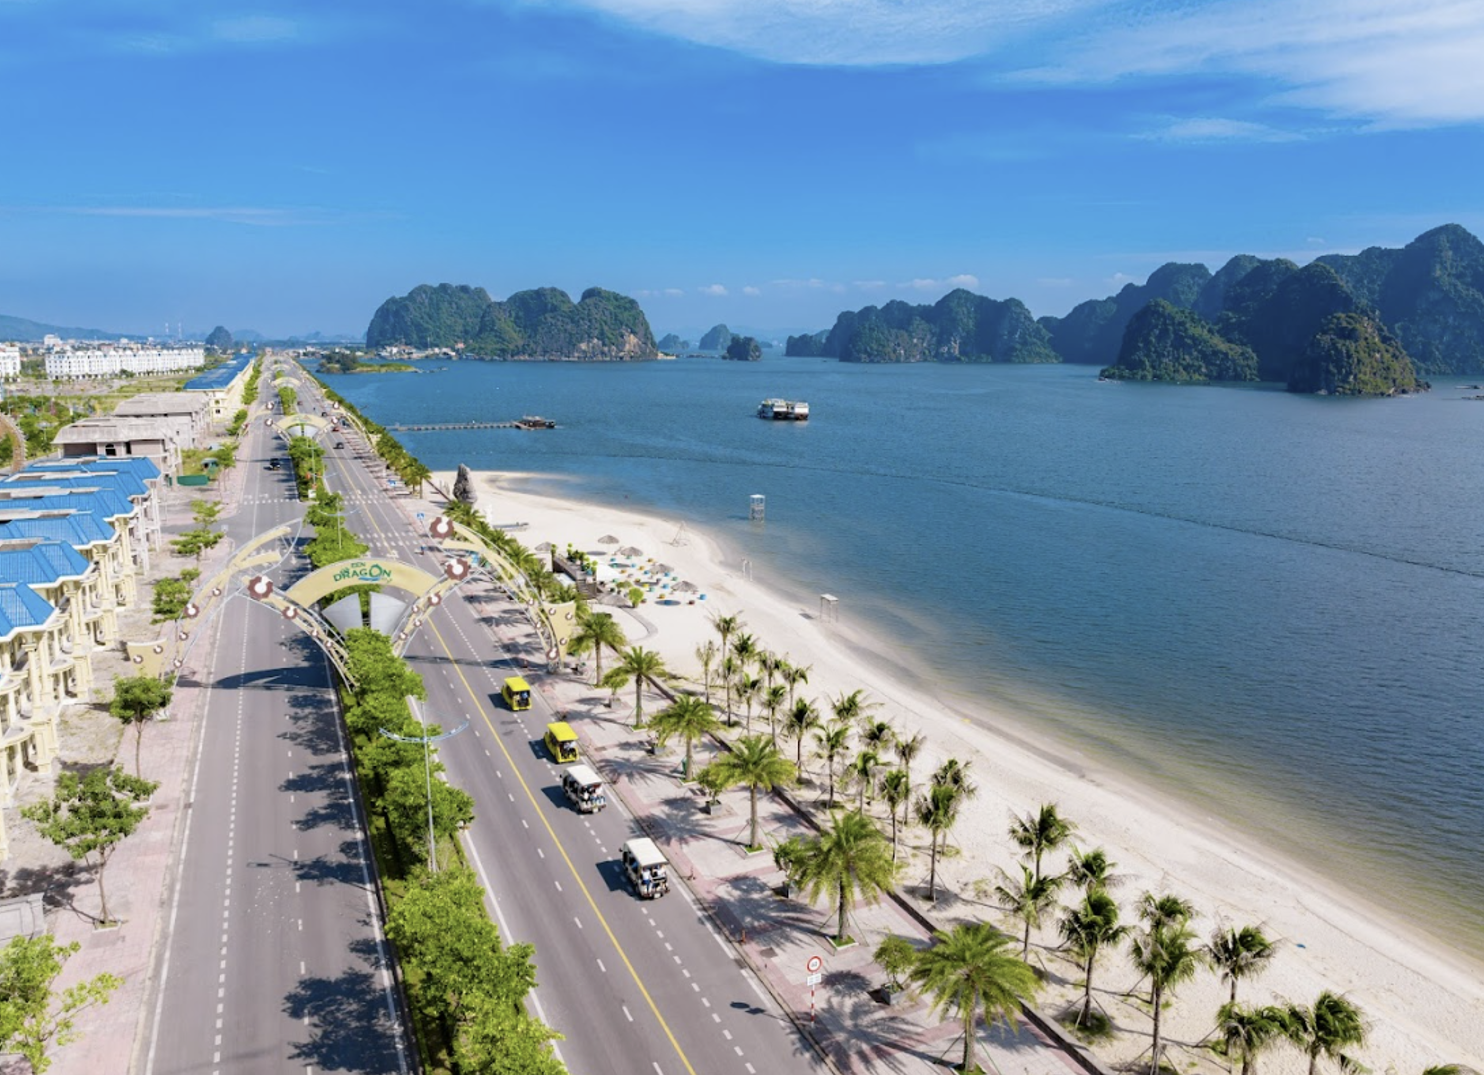 Vịnh giải trí Safabay trải dài trên 2,6 km đường bao biển đẹp nhất Việt Nam